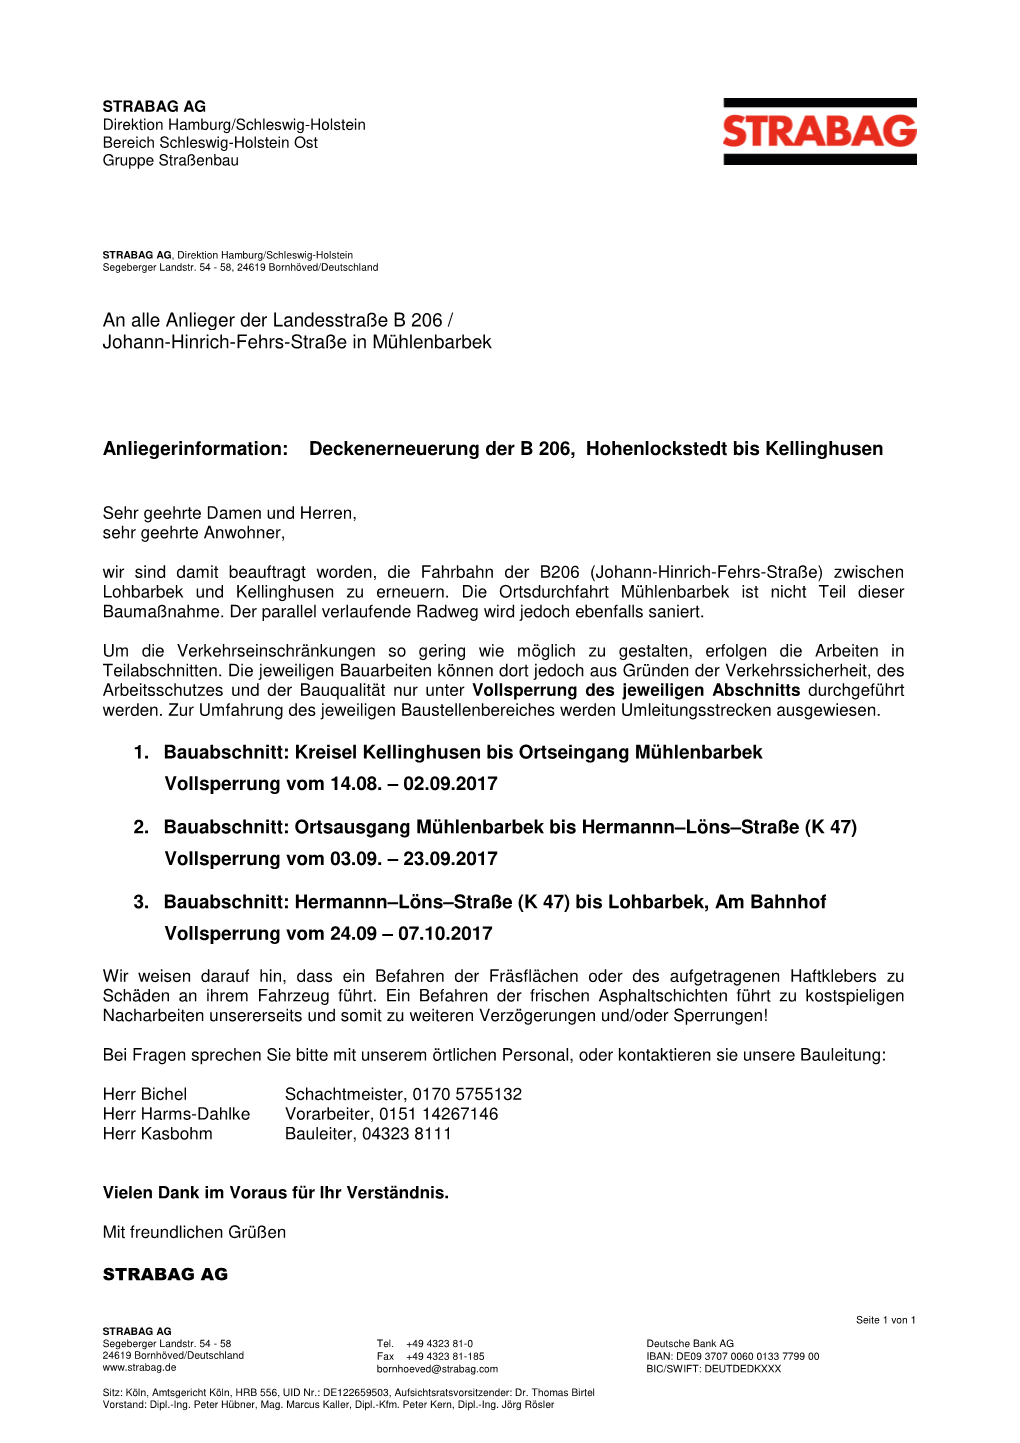 Deckenerneuerung Der B 206, Hohenlockstedt Bis Kellinghusen 1